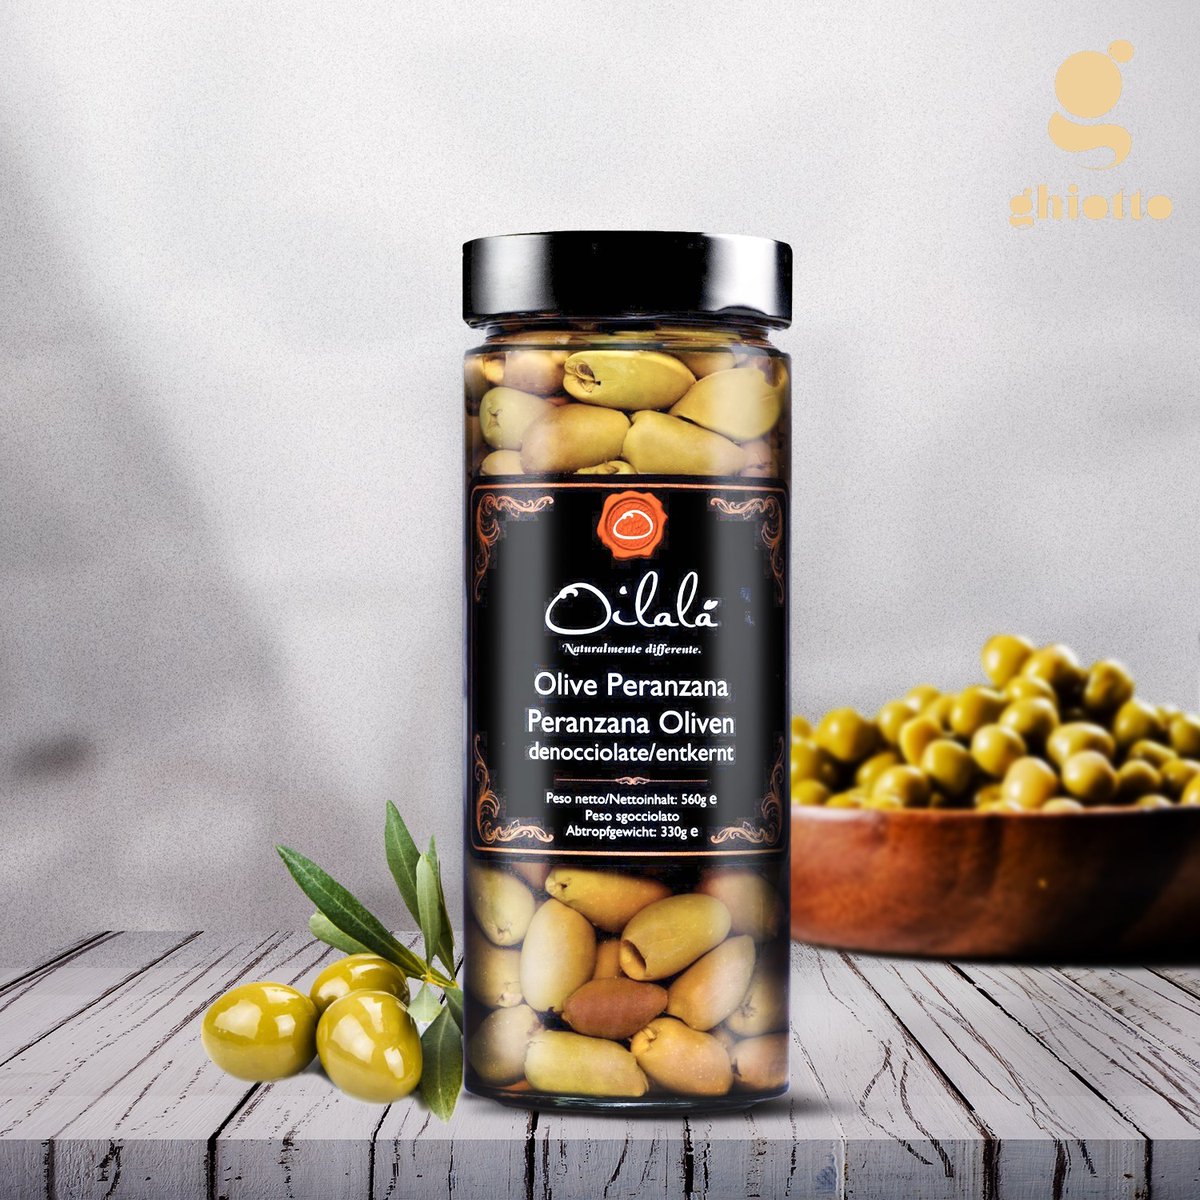 فخامة الطعم تكفي👌زيتون منزوع النوى من غيوتو ❤️
للطلب من  خلال ghiottostore.com
00966549703333
#SaudiArabia #oliveoils #oliveoil #luxury #premiumfood #luxuryfood #Premium